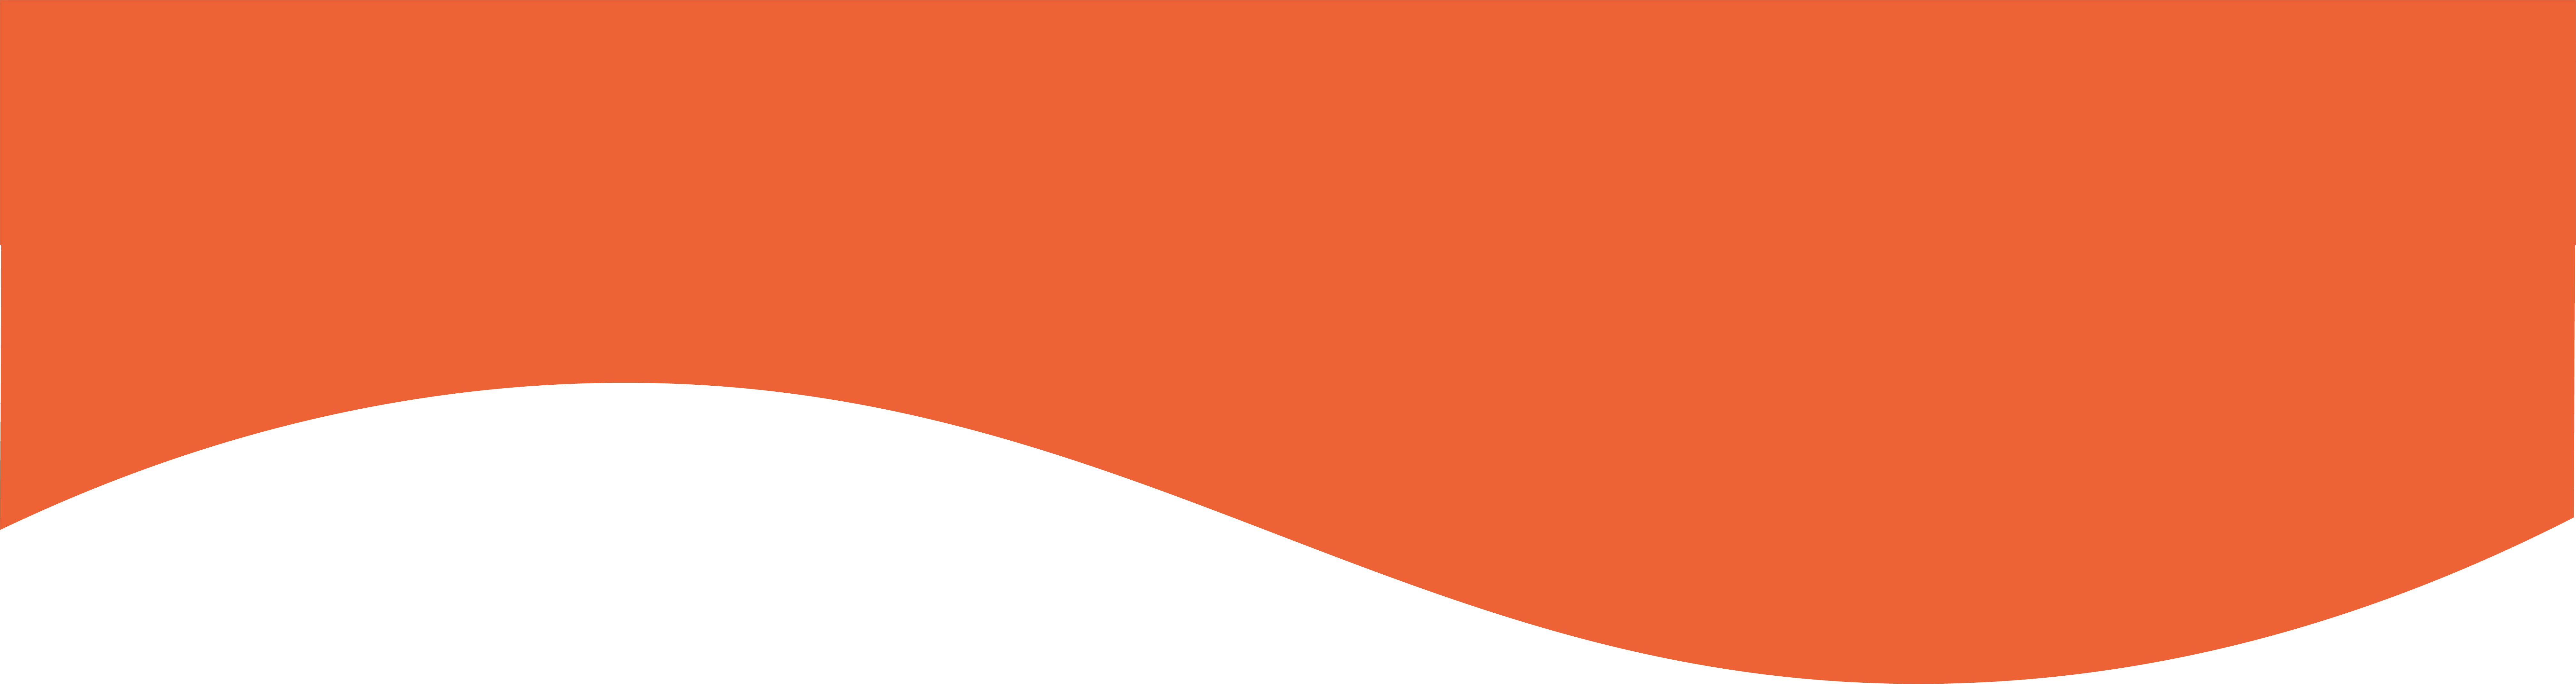 Pédagogie de Chkola, image de vague orange